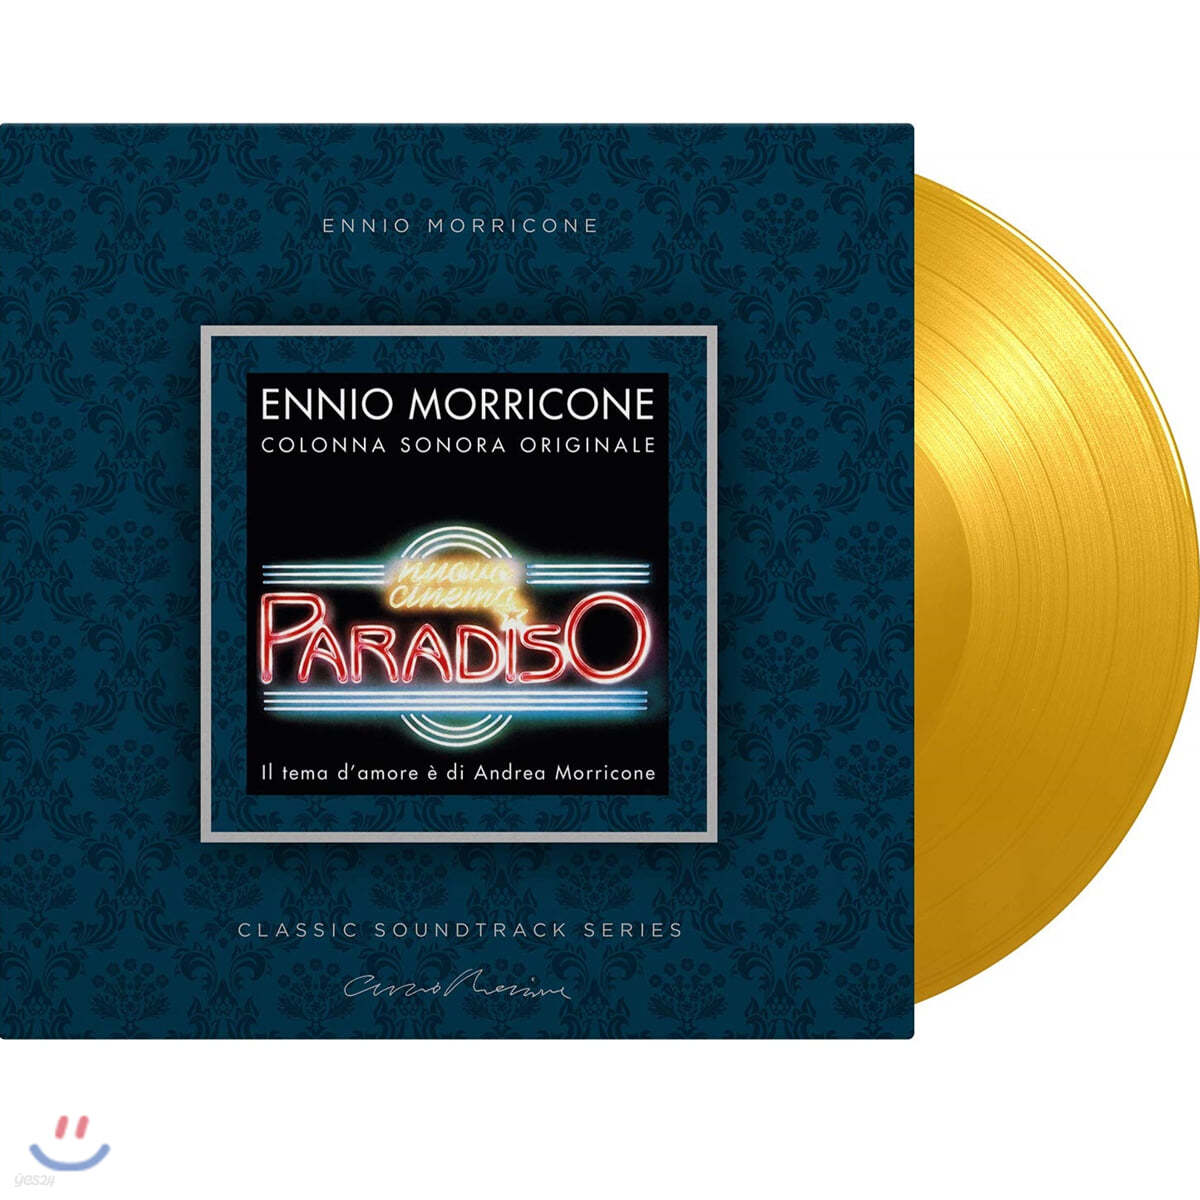 시네마 천국 영화음악 (Cinema Paradiso OST by Ennio Morricone 엔니오 모리꼬네) [솔리드 옐로우 컬러 LP] 